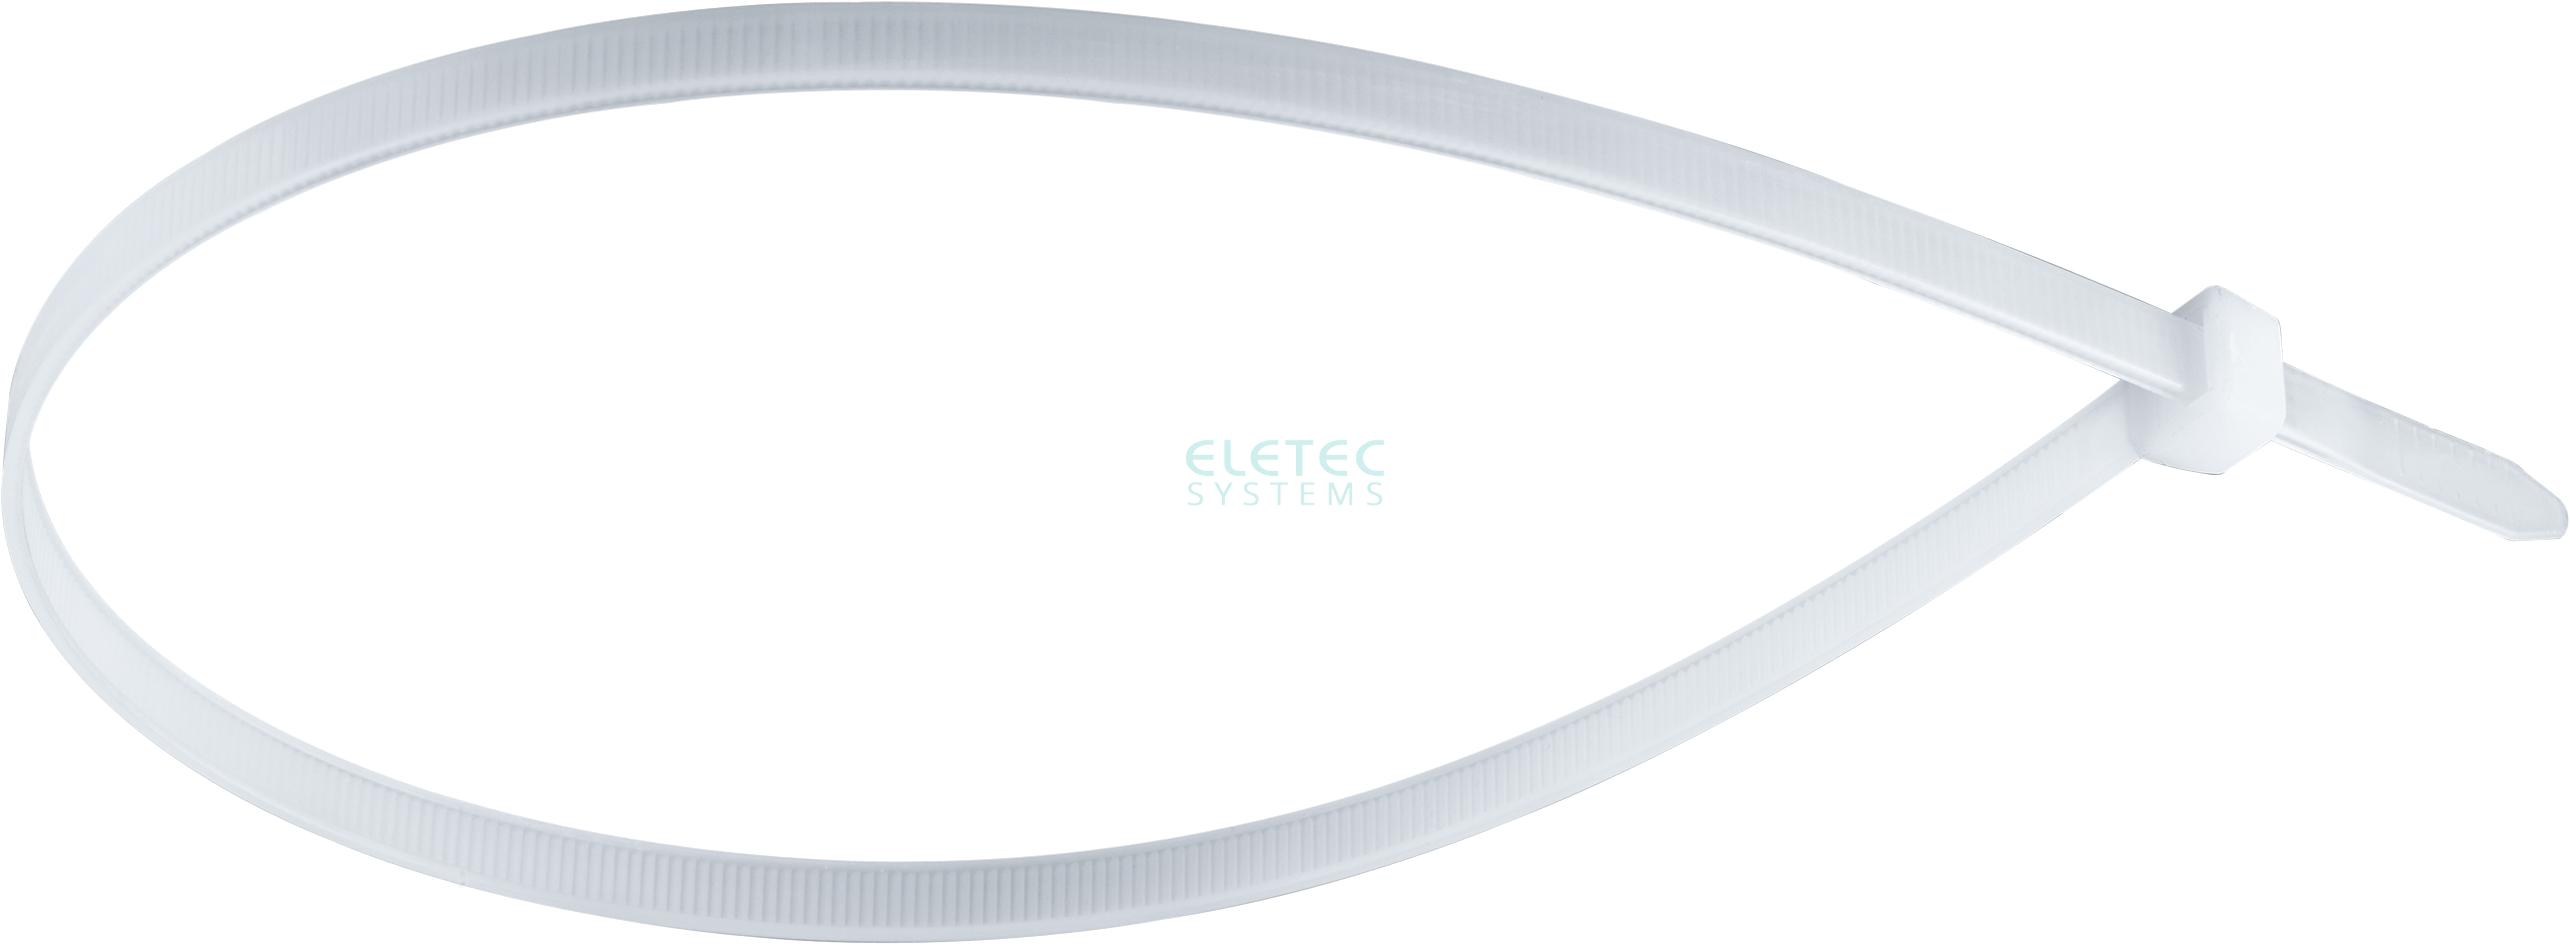 картинка Стяжка для кабеля 290х4,8 бесцветная (100 шт) Eletec Systems